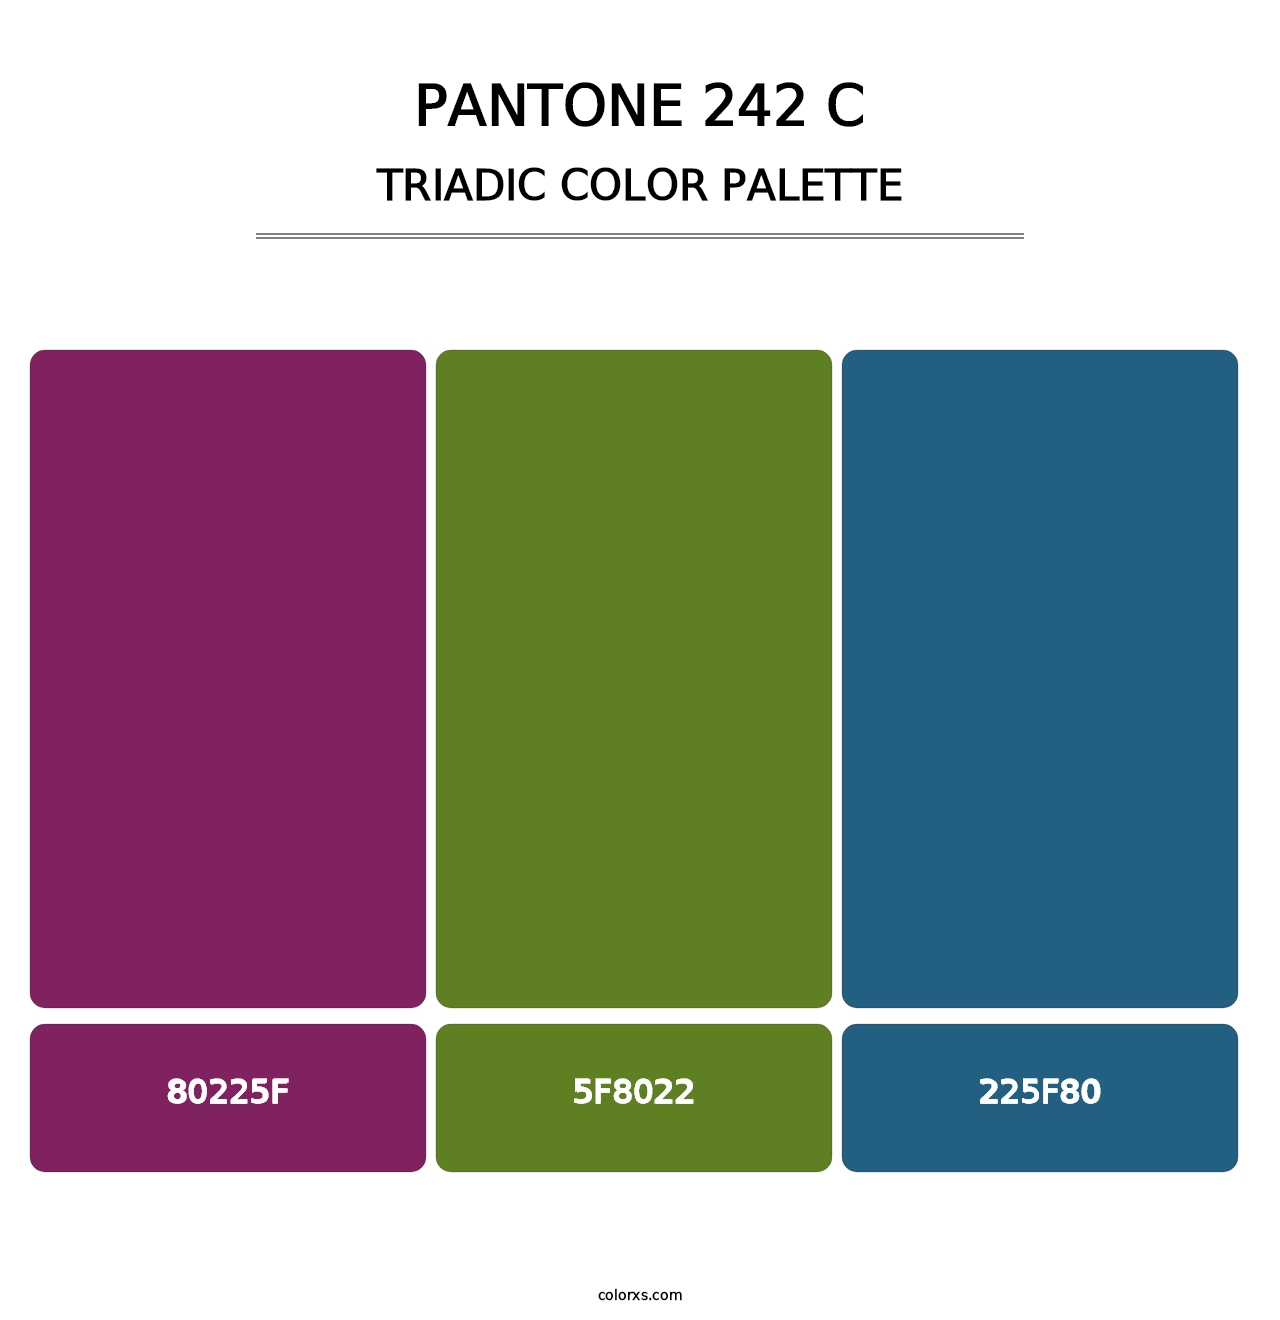 PANTONE 242 C - Triadic Color Palette